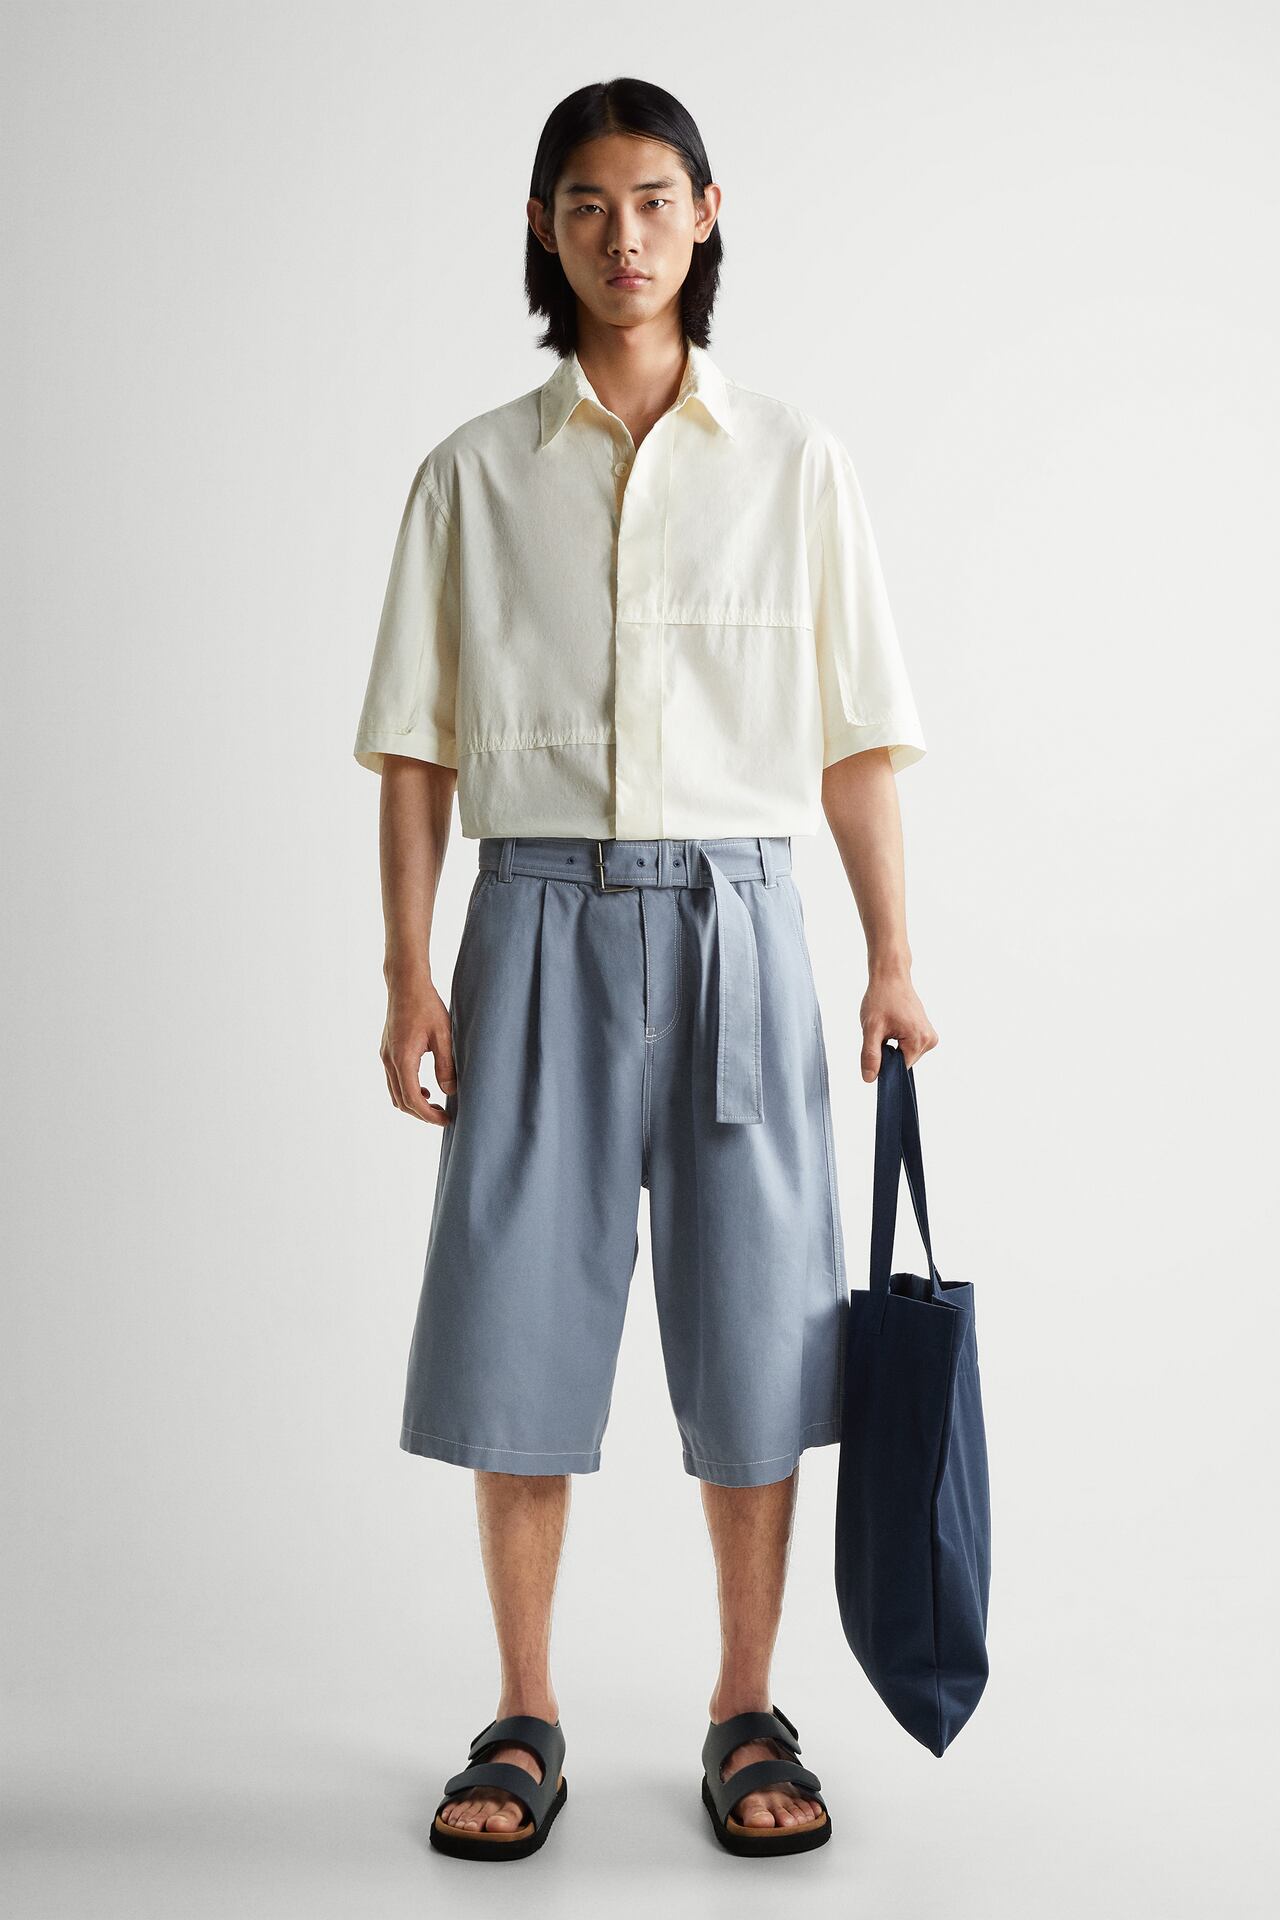 men's summer shorts from zara